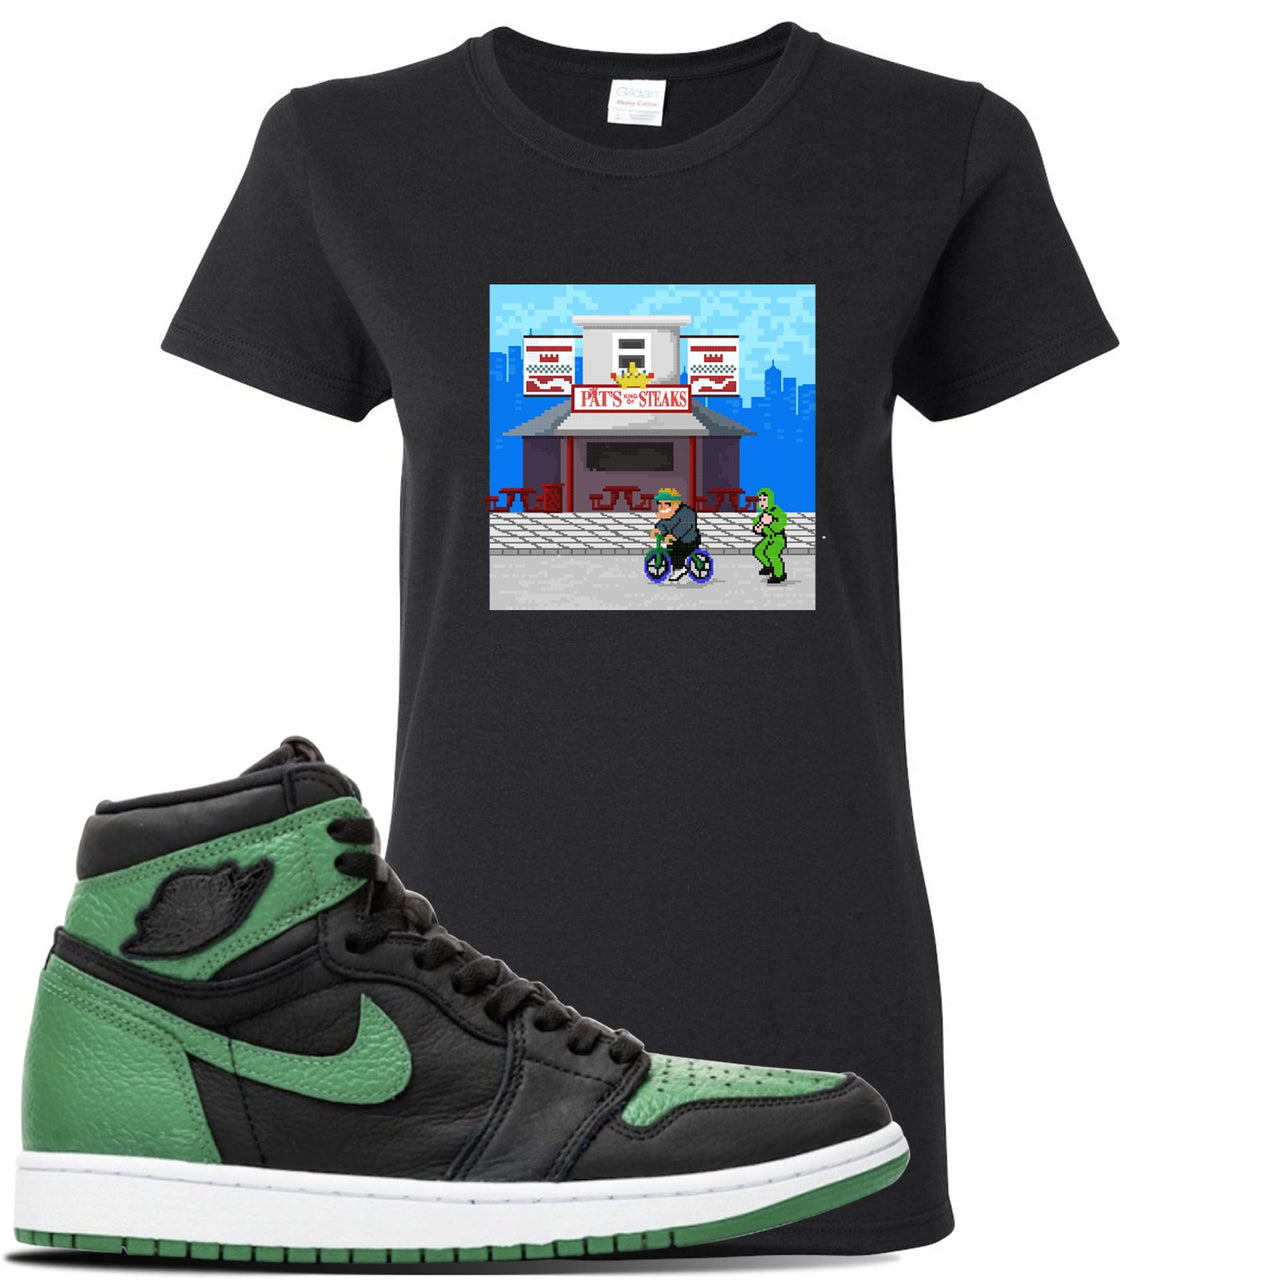 Jordan 1 Retro High OG Pine Green Gym Sneaker Black Women's T Shirt | Women's Tees to match Air Jordan 1 Retro High OG Pine Green Gym Shoes | Pats Steak Little Mac